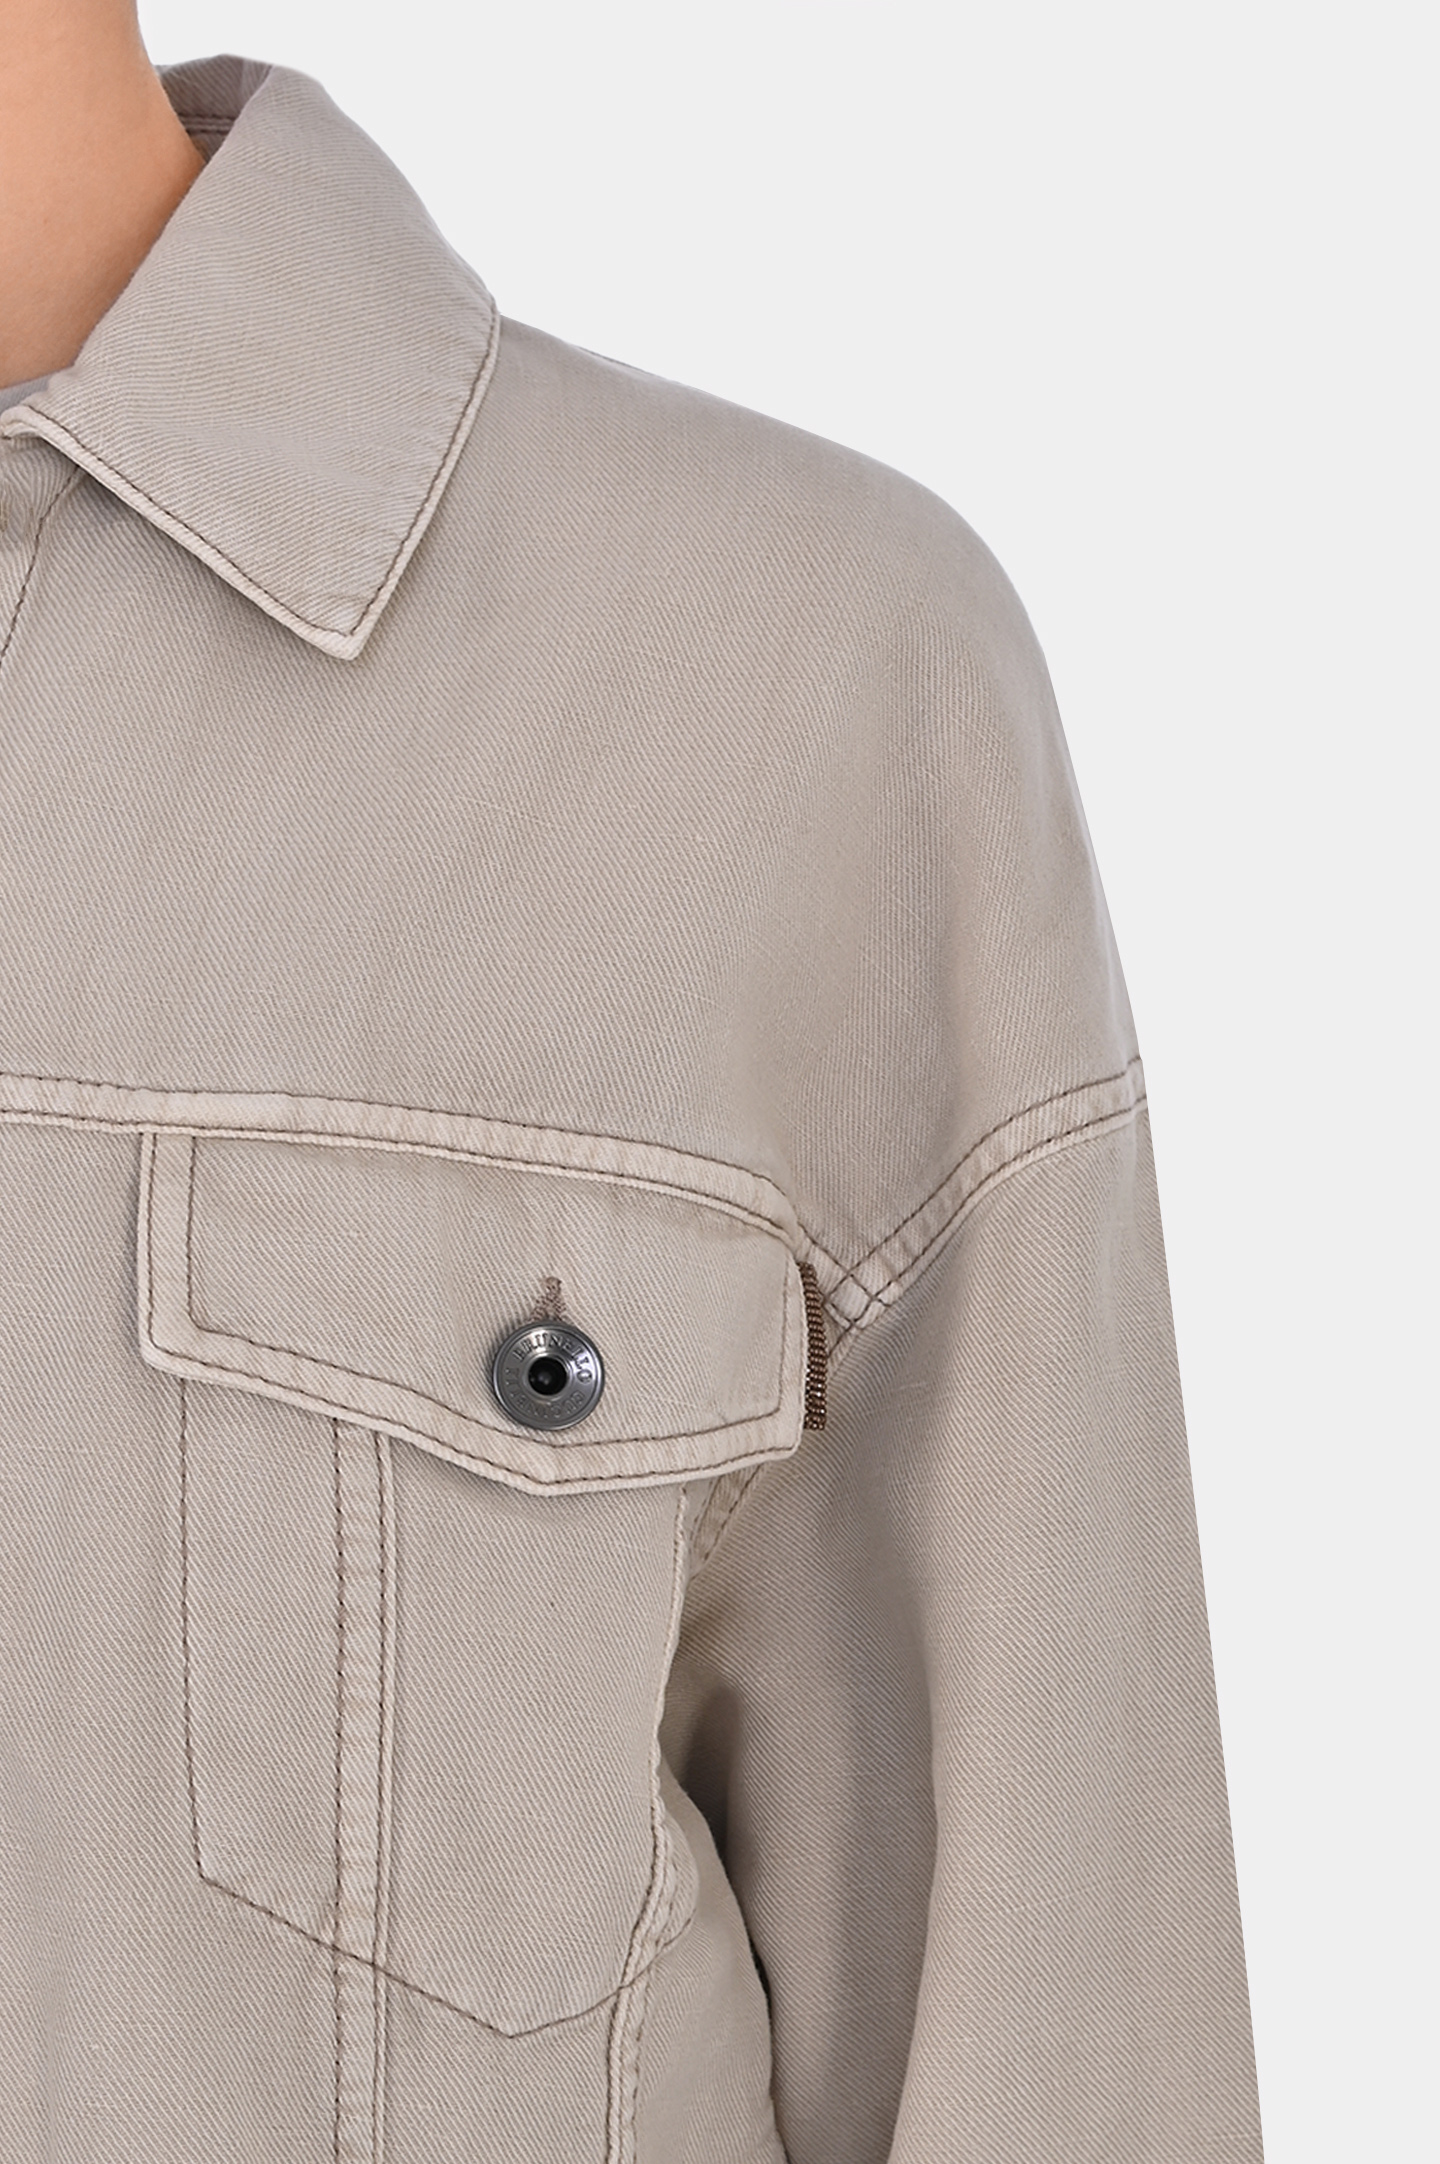 Джинсовая куртка с карманами BRUNELLO  CUCINELLI ML9962994, цвет: Светло-бежевый, Женский